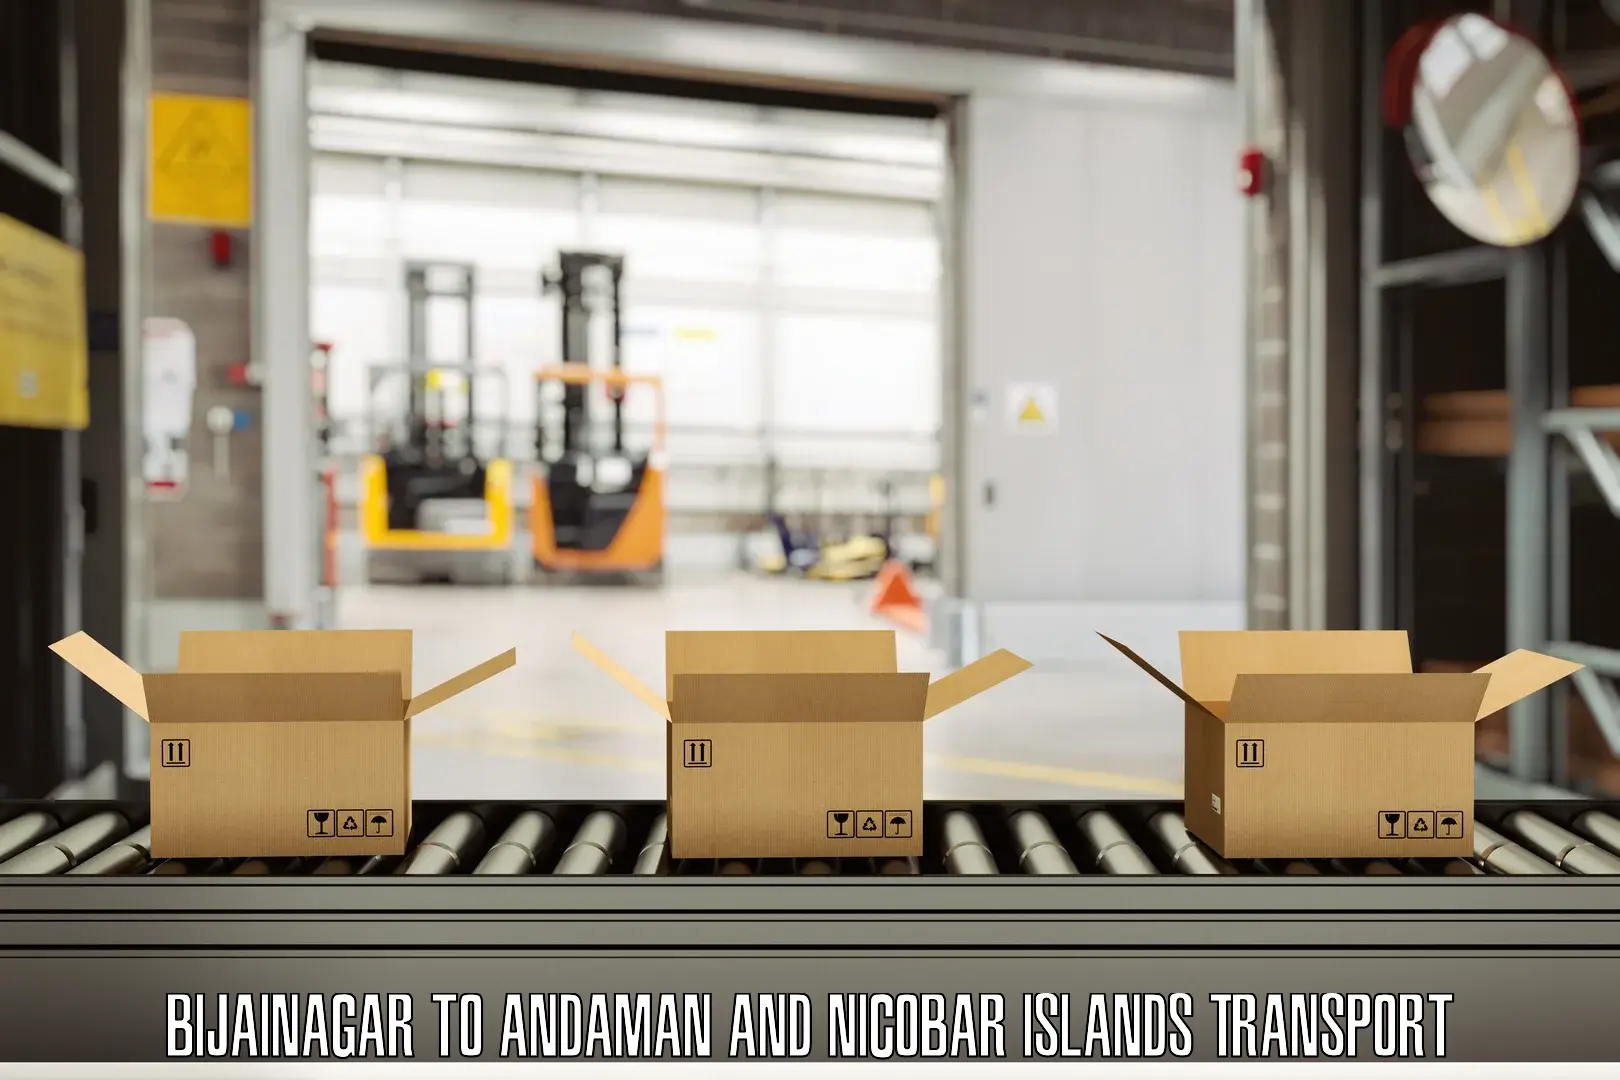 Container transport service Bijainagar to Andaman and Nicobar Islands